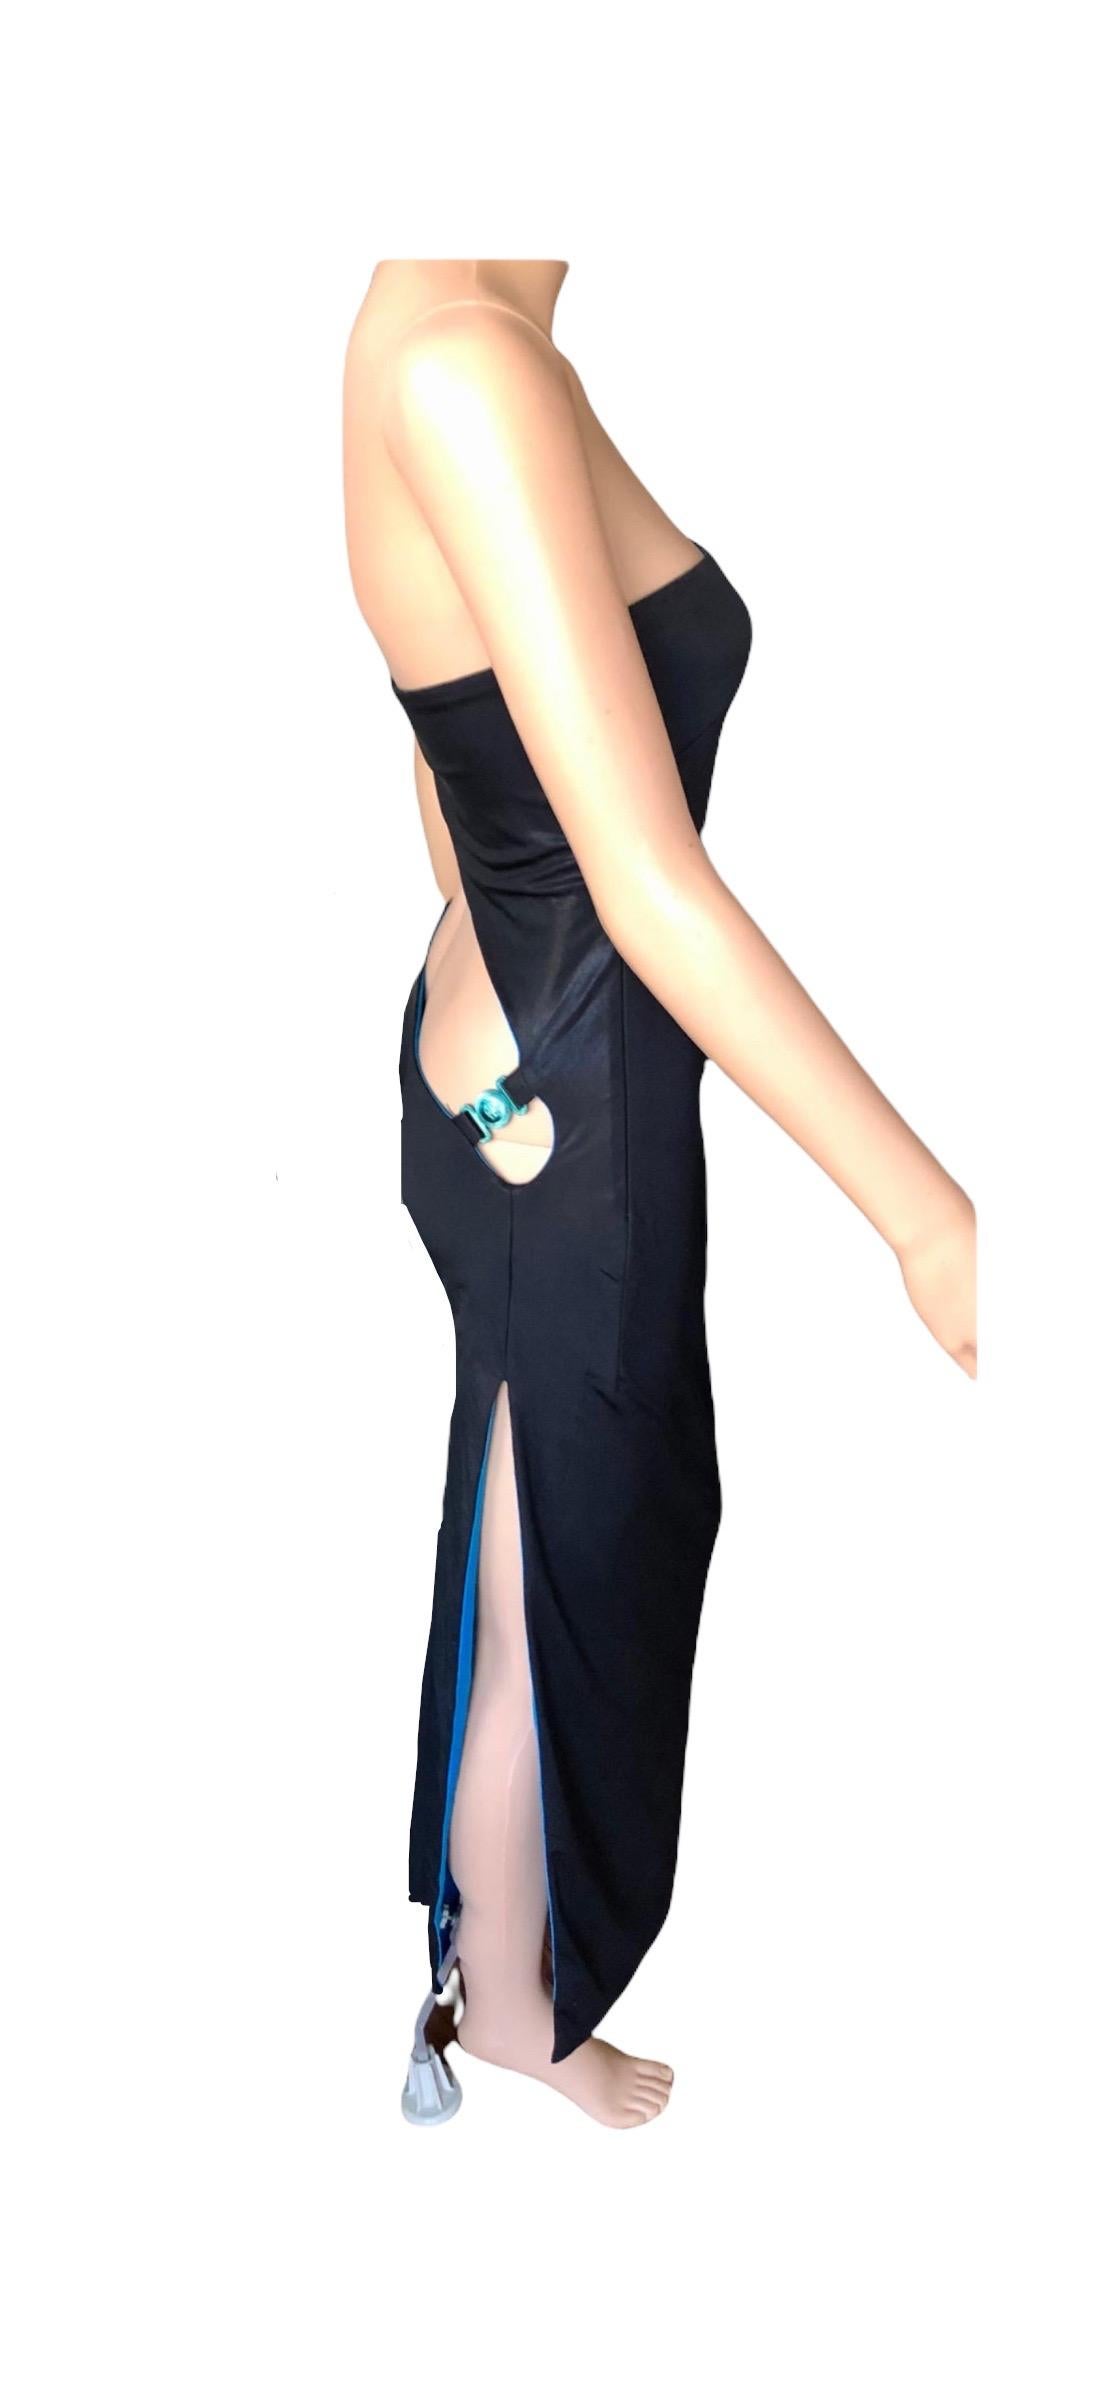 Women's Gianni Versace S/S 1998 Runway Vintage Wet Liquid Look Cutout Evening Dress Gown